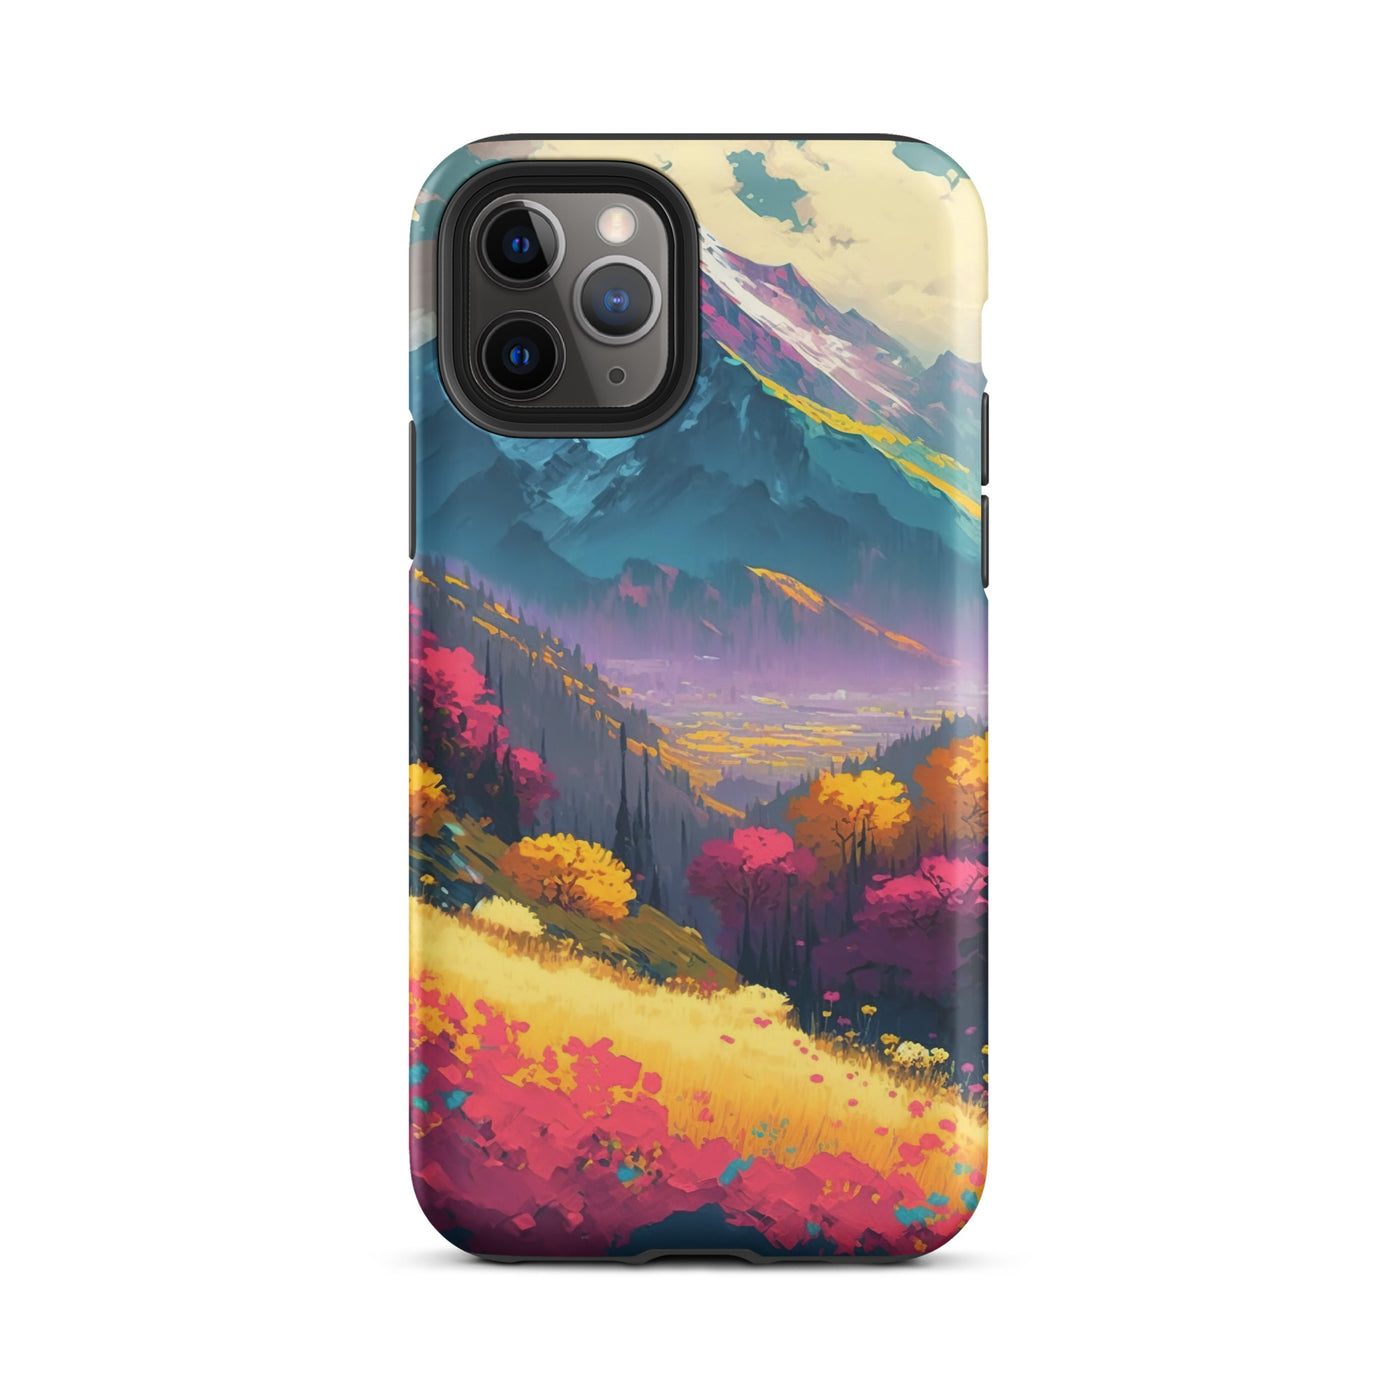 Berge, pinke und gelbe Bäume, sowie Blumen - Farbige Malerei - iPhone Schutzhülle (robust) berge xxx iPhone 11 Pro